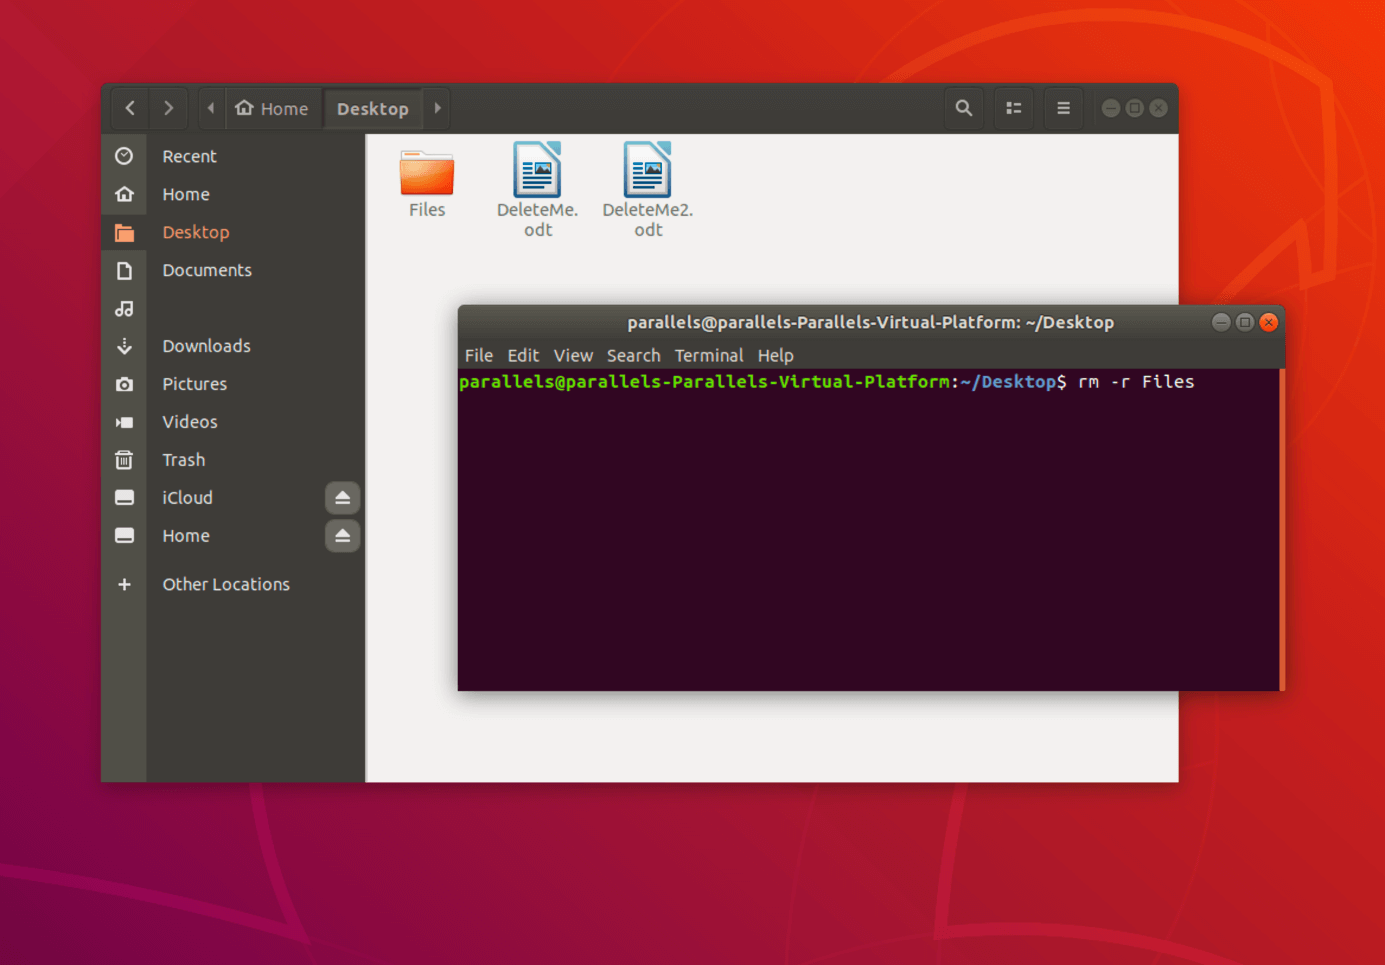 Commande dans le terminal pour supprimer la totalité d’un répertoire sous Linux